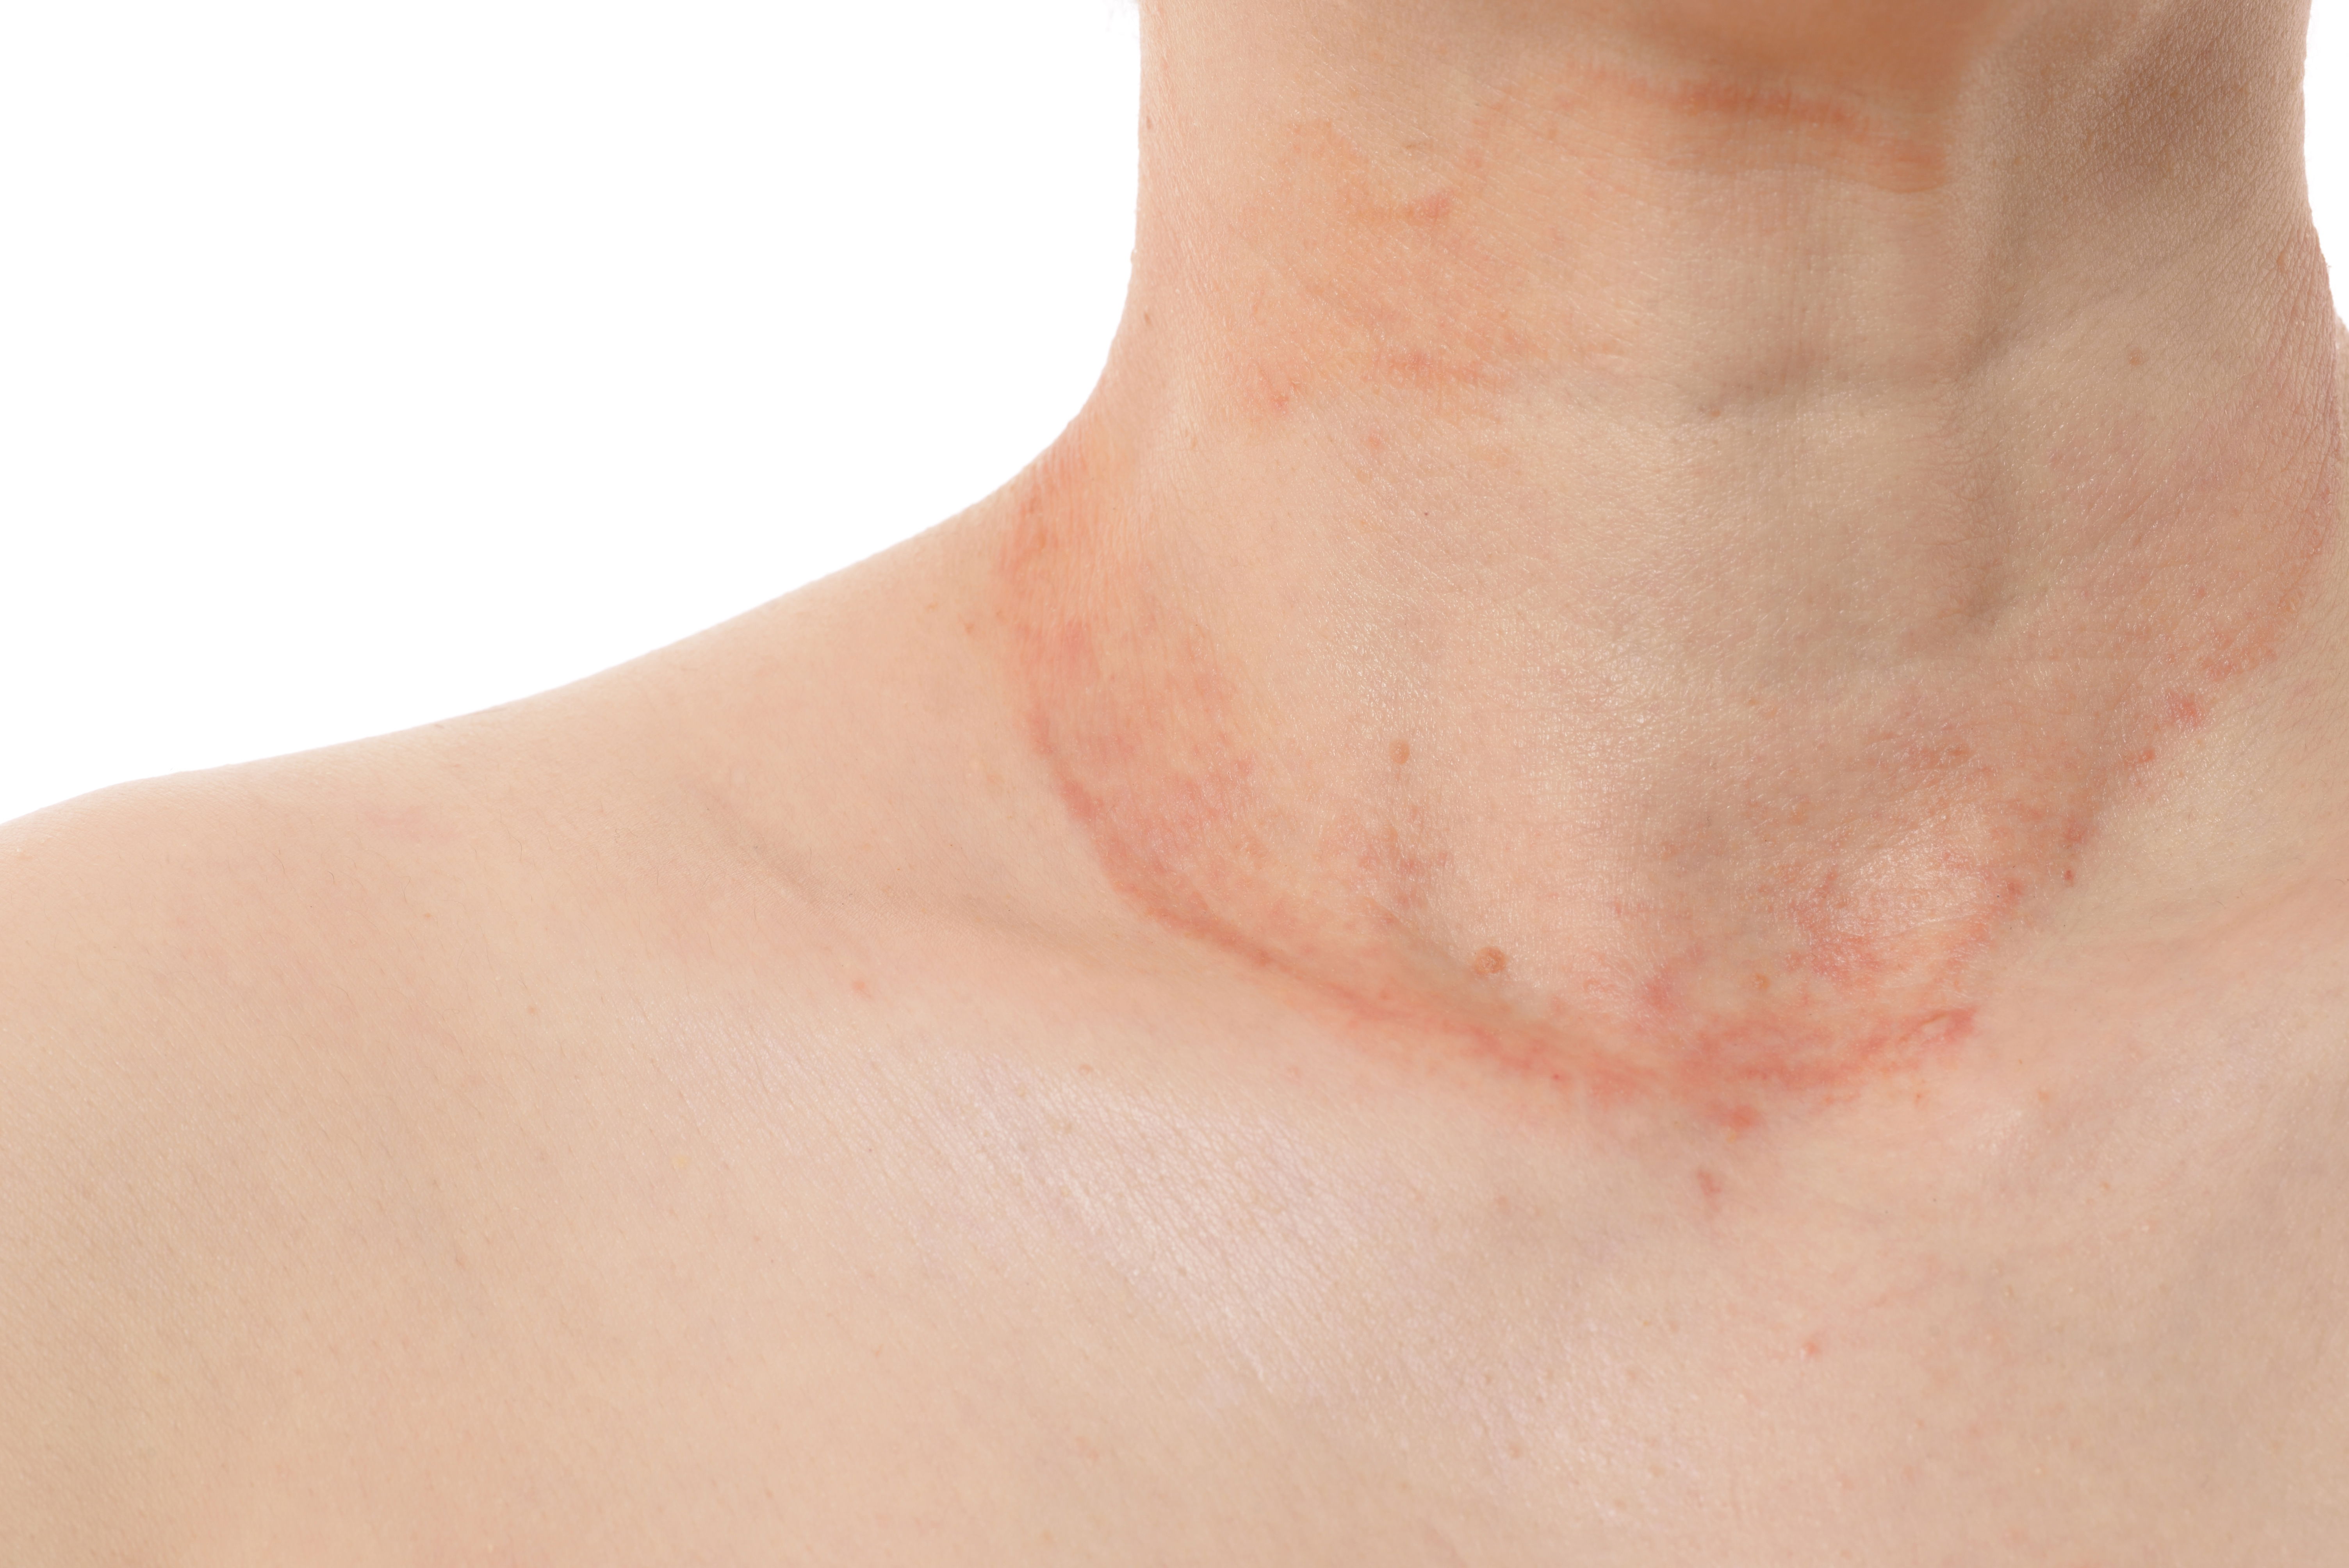 Deutlich sichtbare Symptome und Kratzspuren am Hals